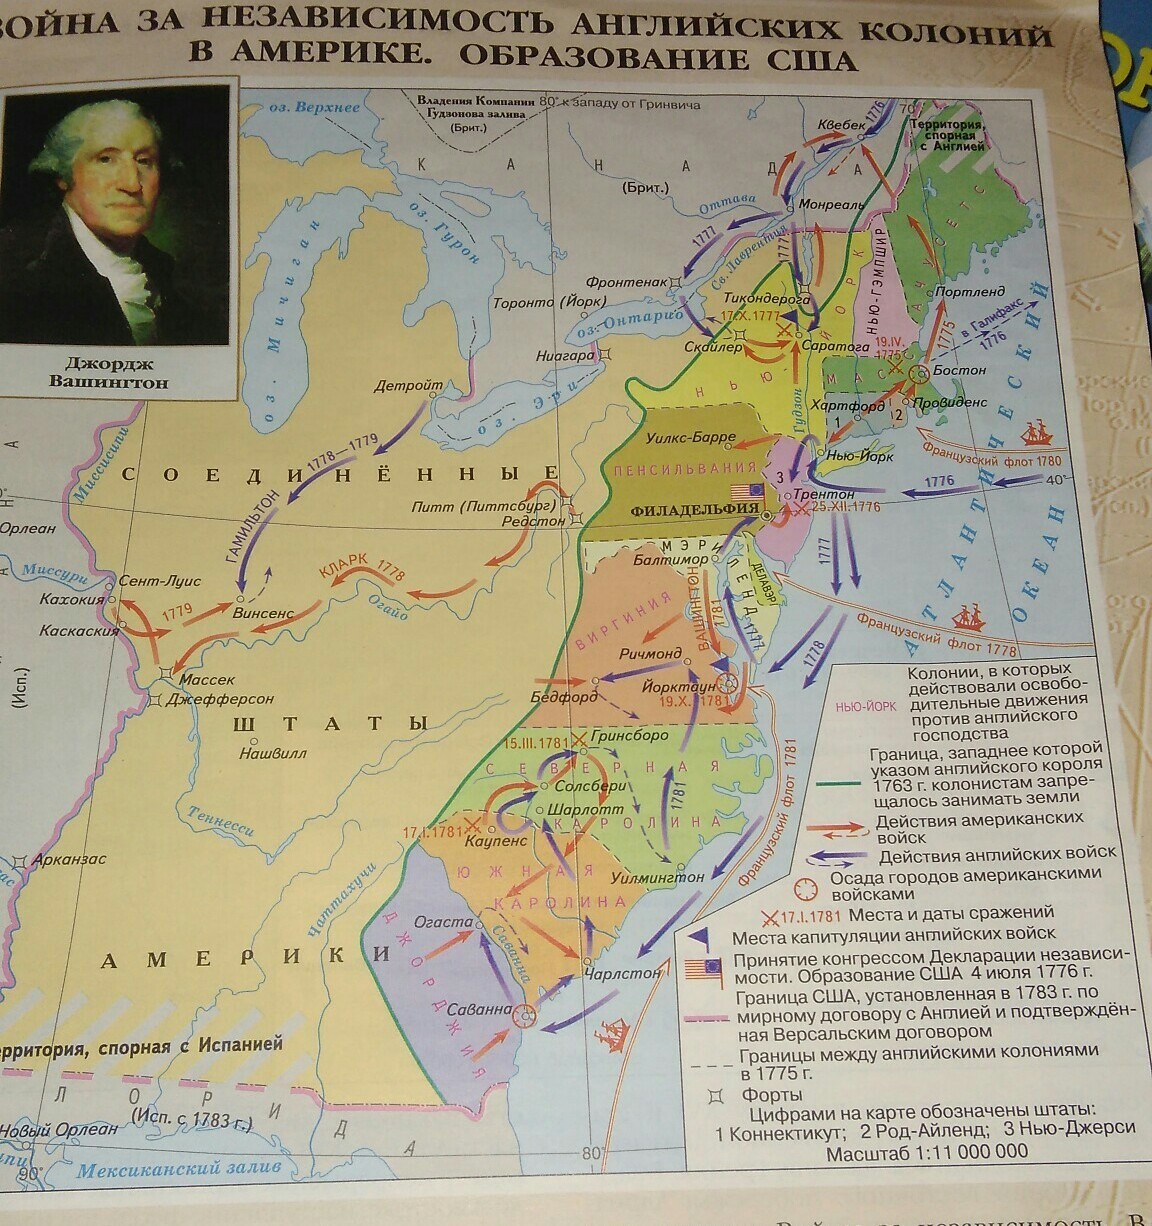 Во время войны британских колоний в америке. США 1775-1783 карта.